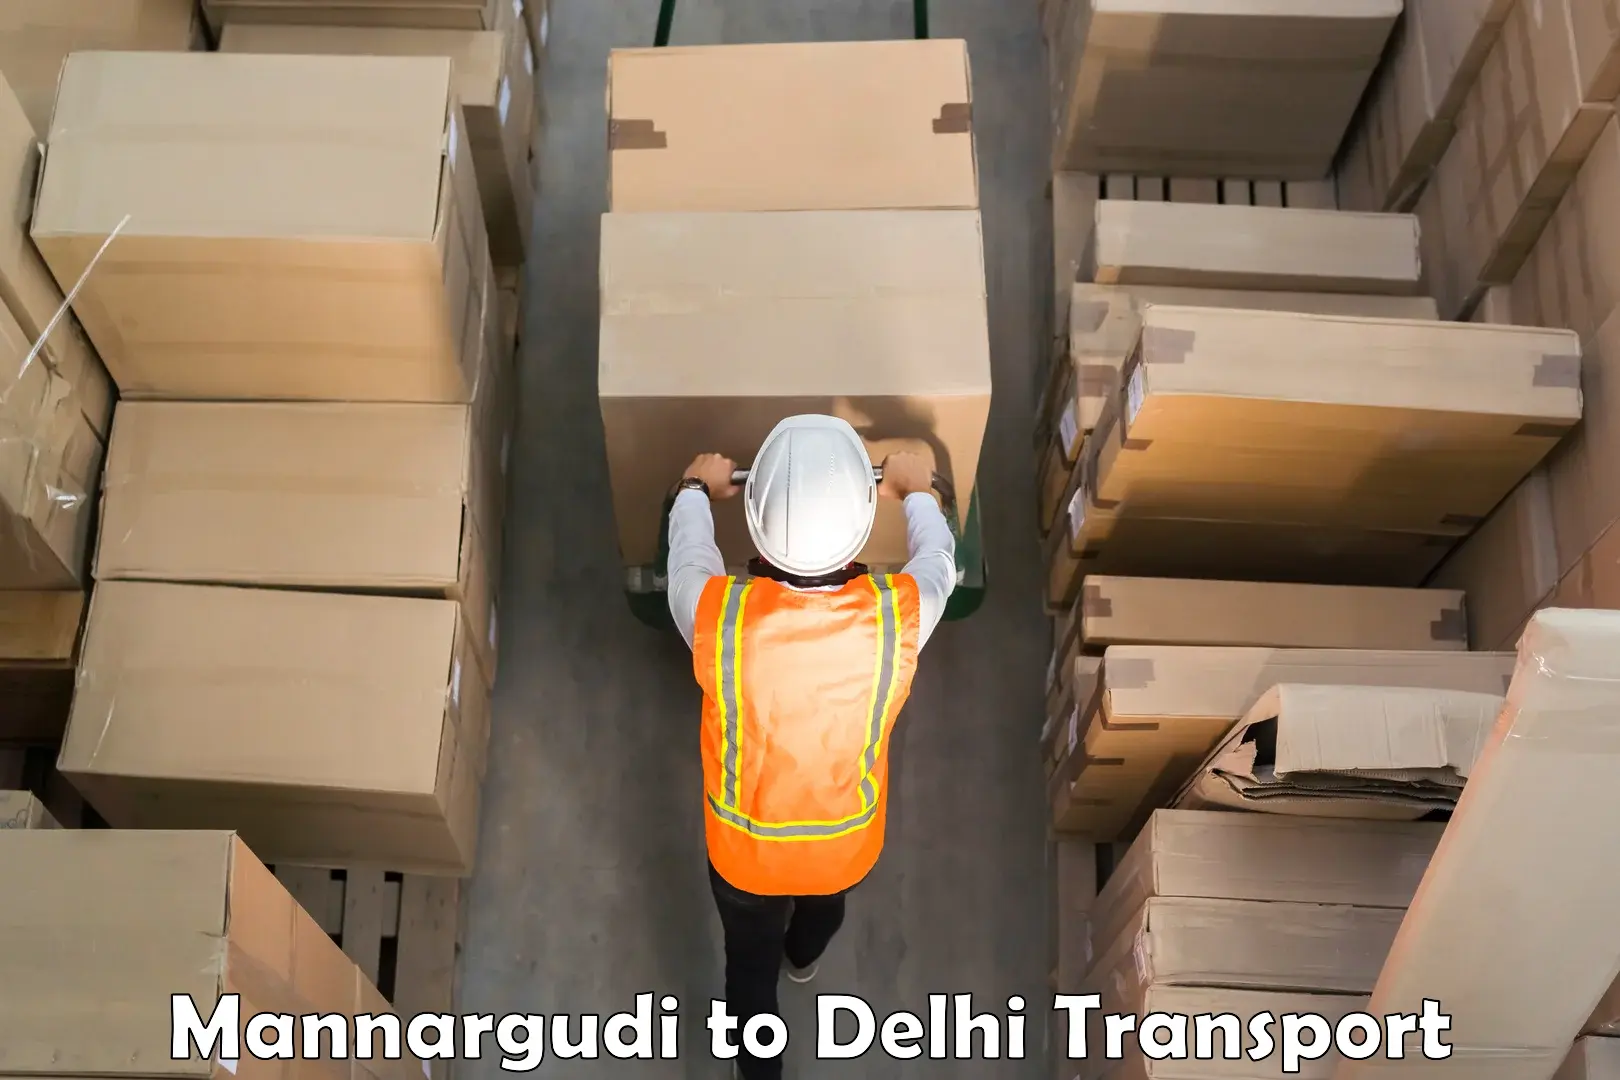 Transport shared services Mannargudi to Delhi Technological University DTU